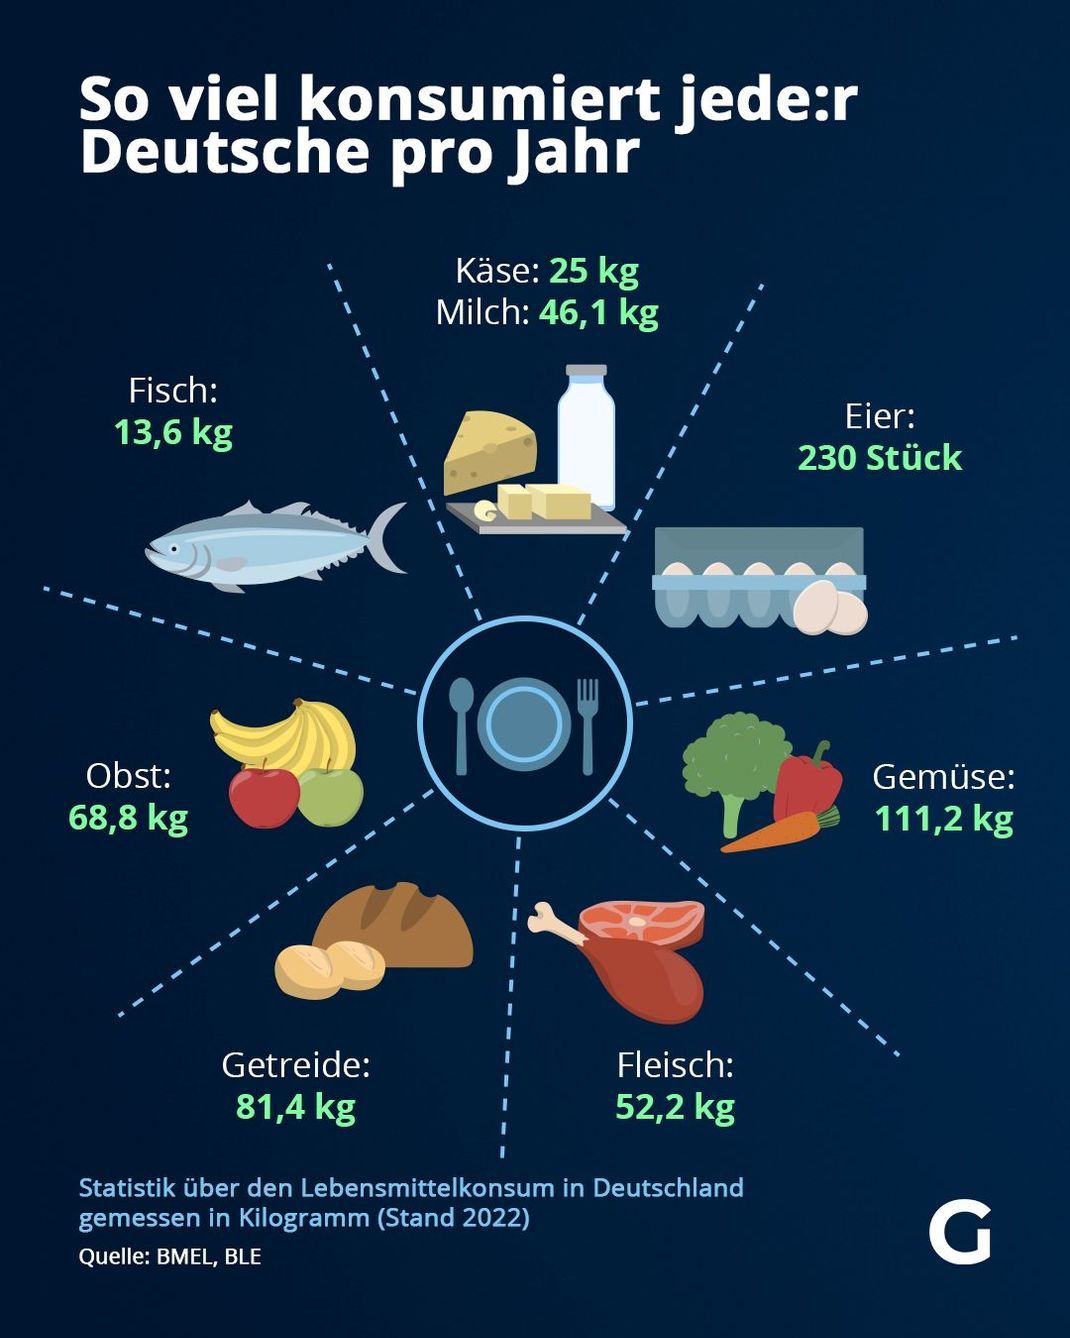 So viel konsumiert jede:r Deutsche pro Jahr